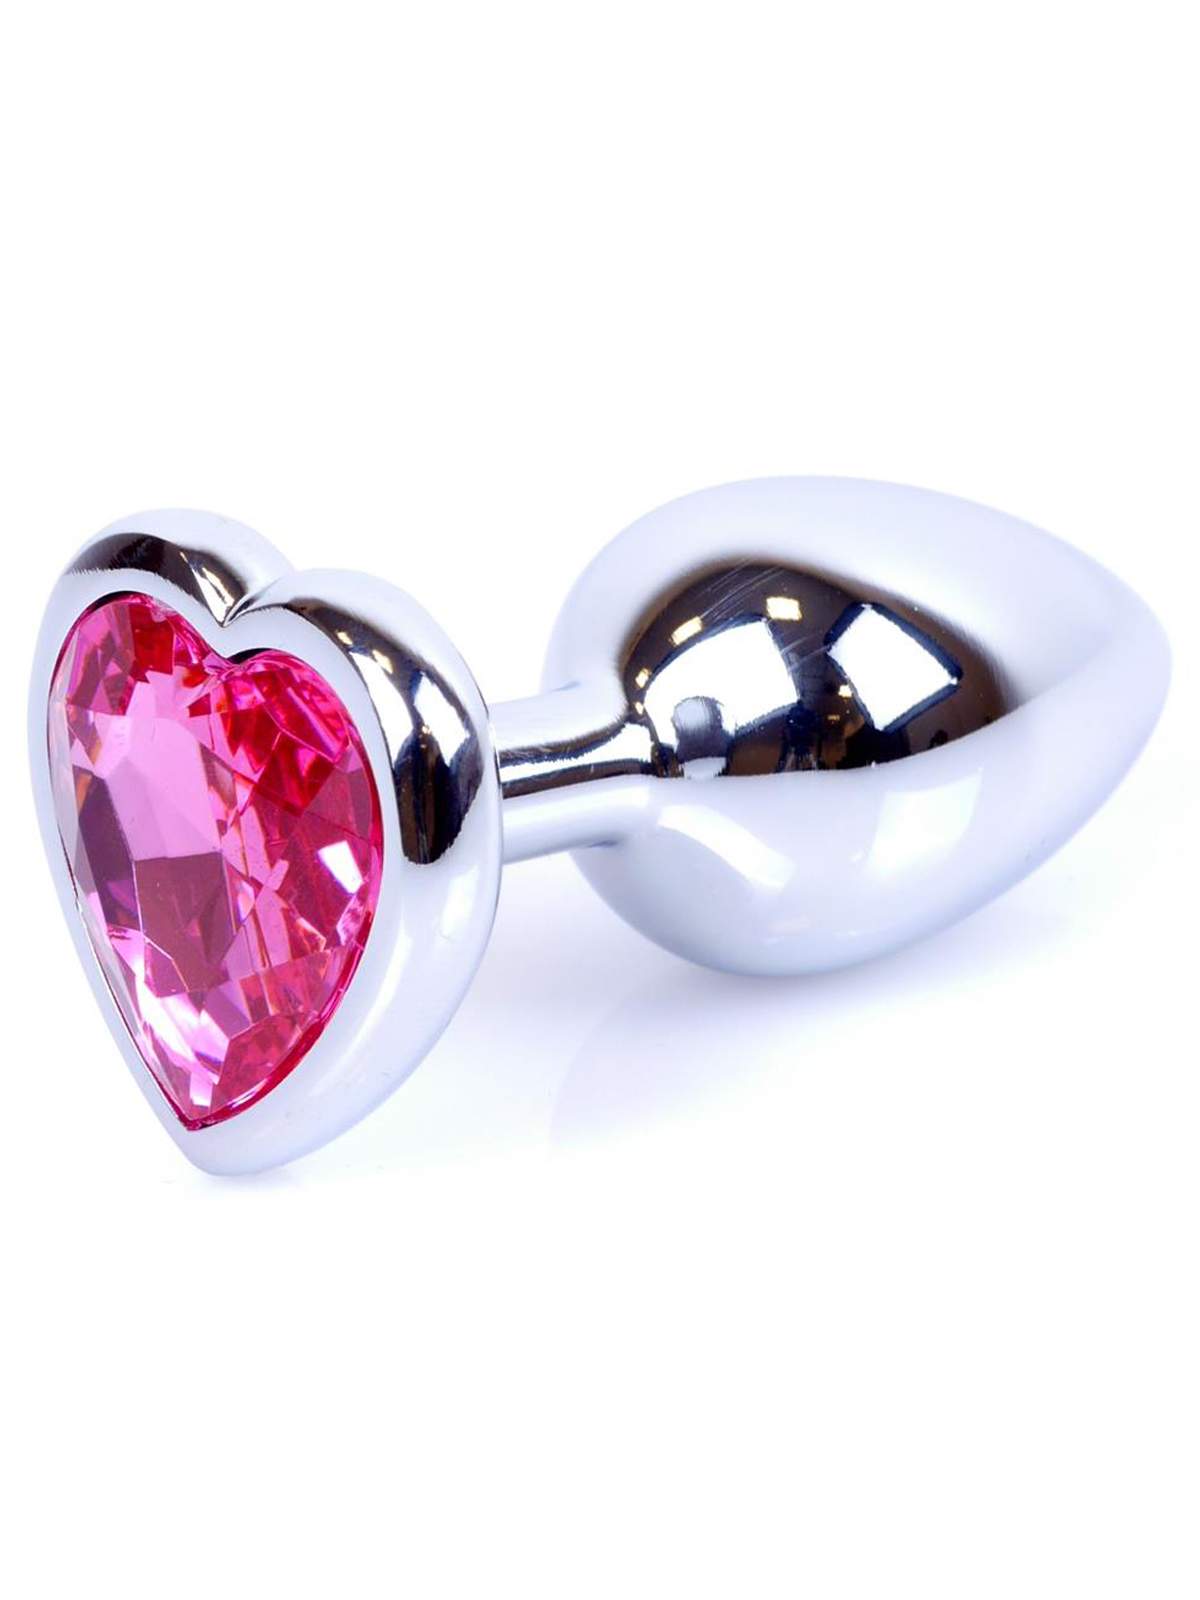 Srebrny metalowy korek analny z kryształkiem w kształcie serca - średnica 2,8 cm